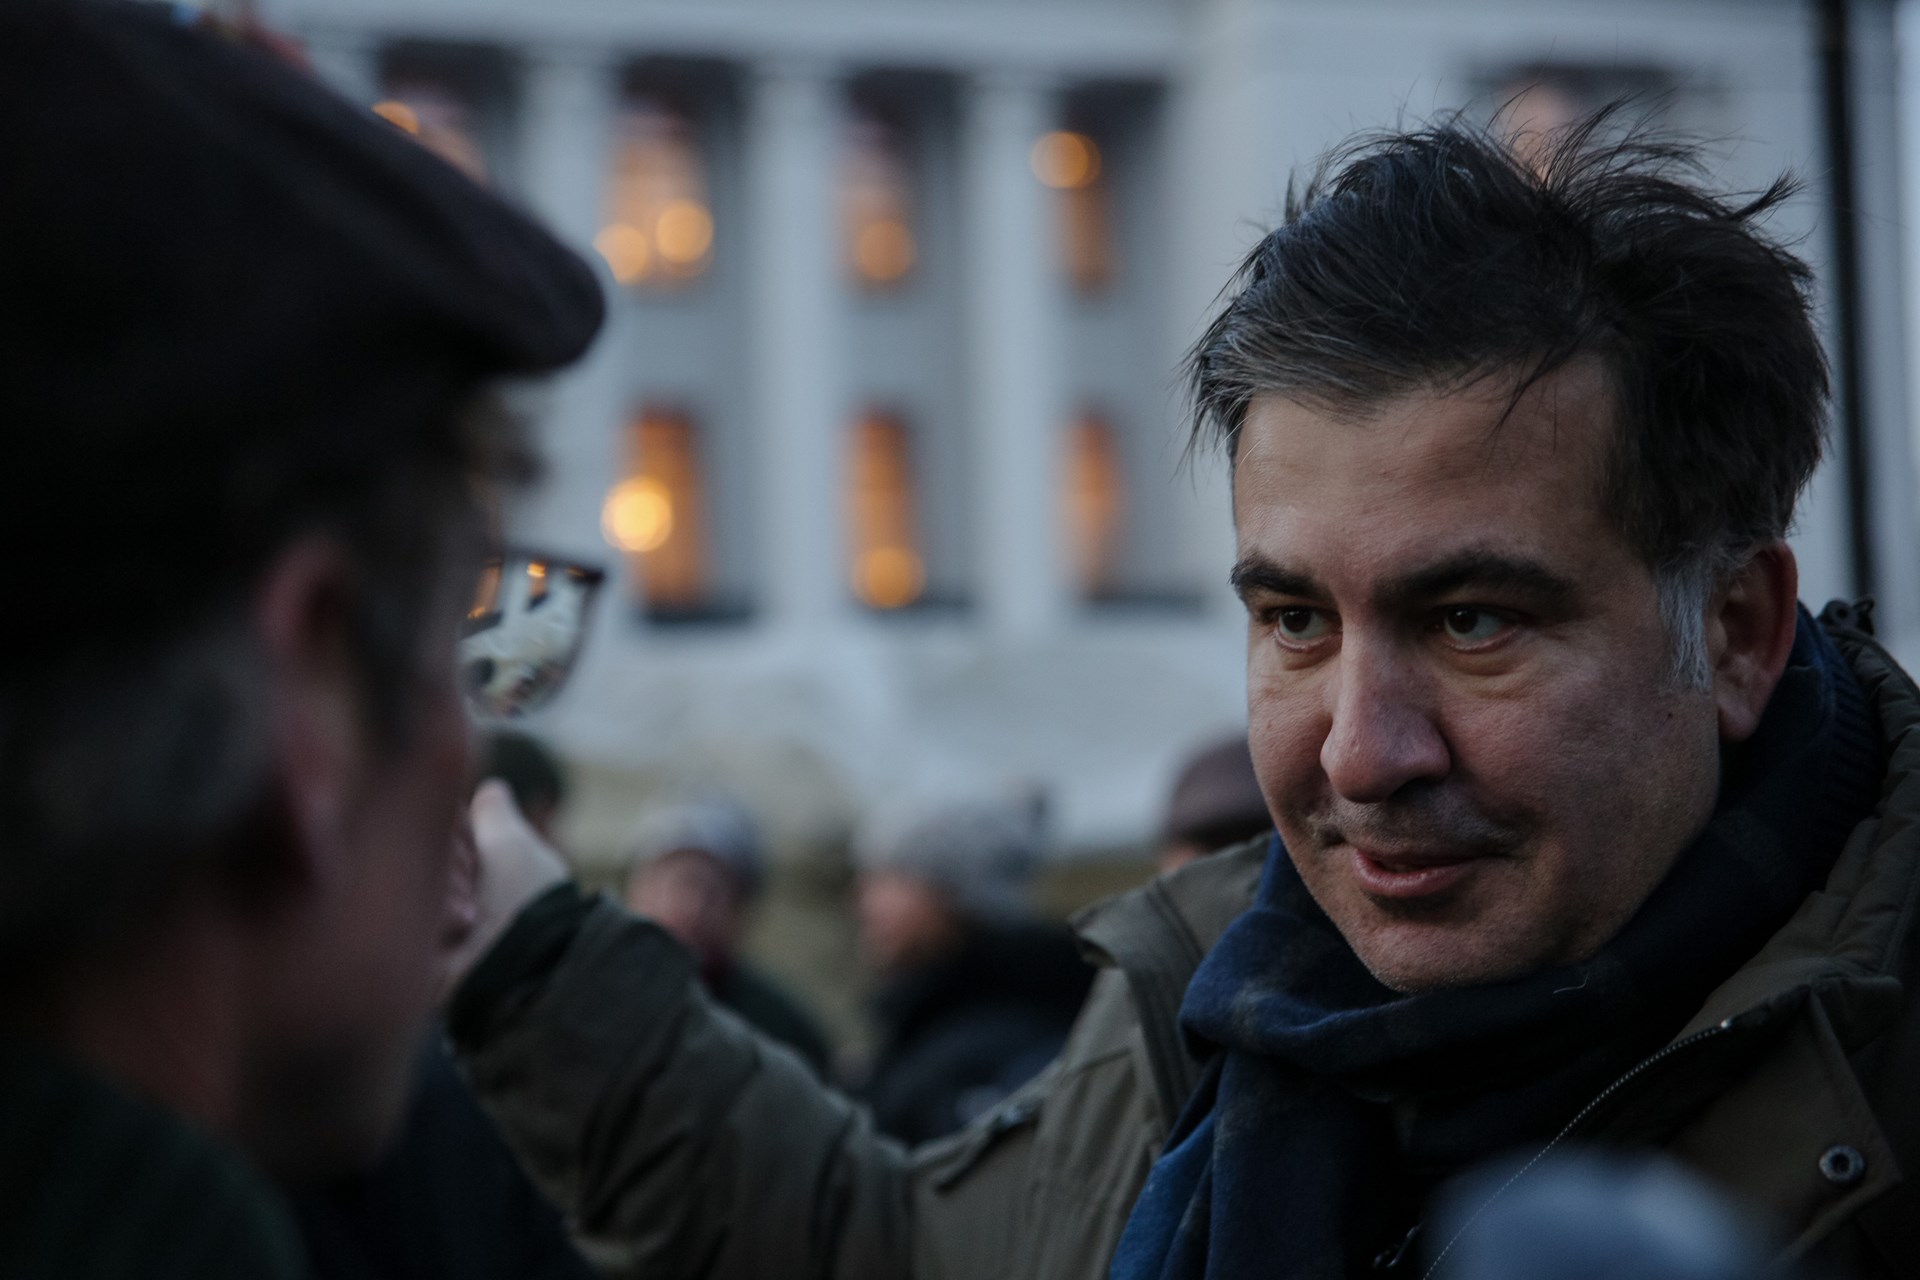 Саакашвили допросили в прокуратуре по делу о расстрелах на Майдане